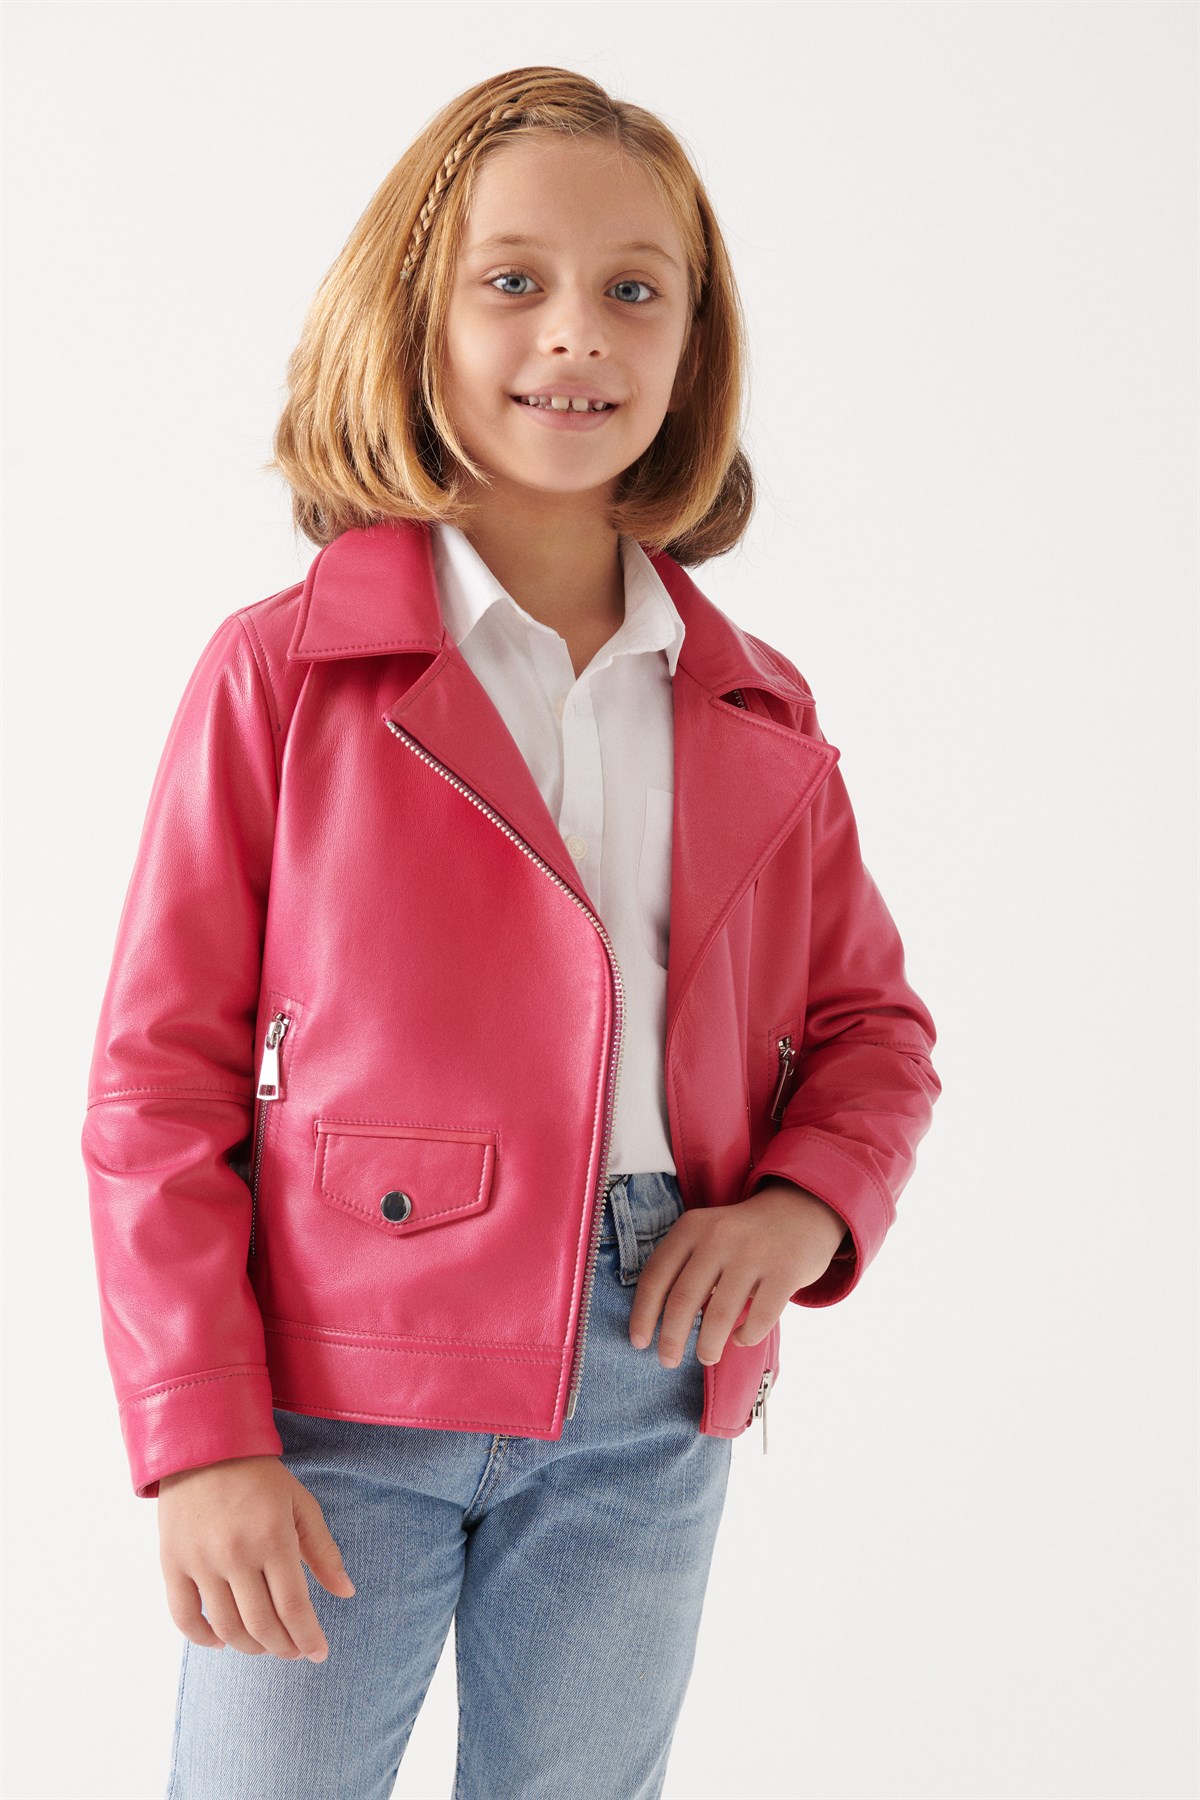 LARA Girls Vanilla Leather Jacket | Girls Leather and Shearling Jacket ...